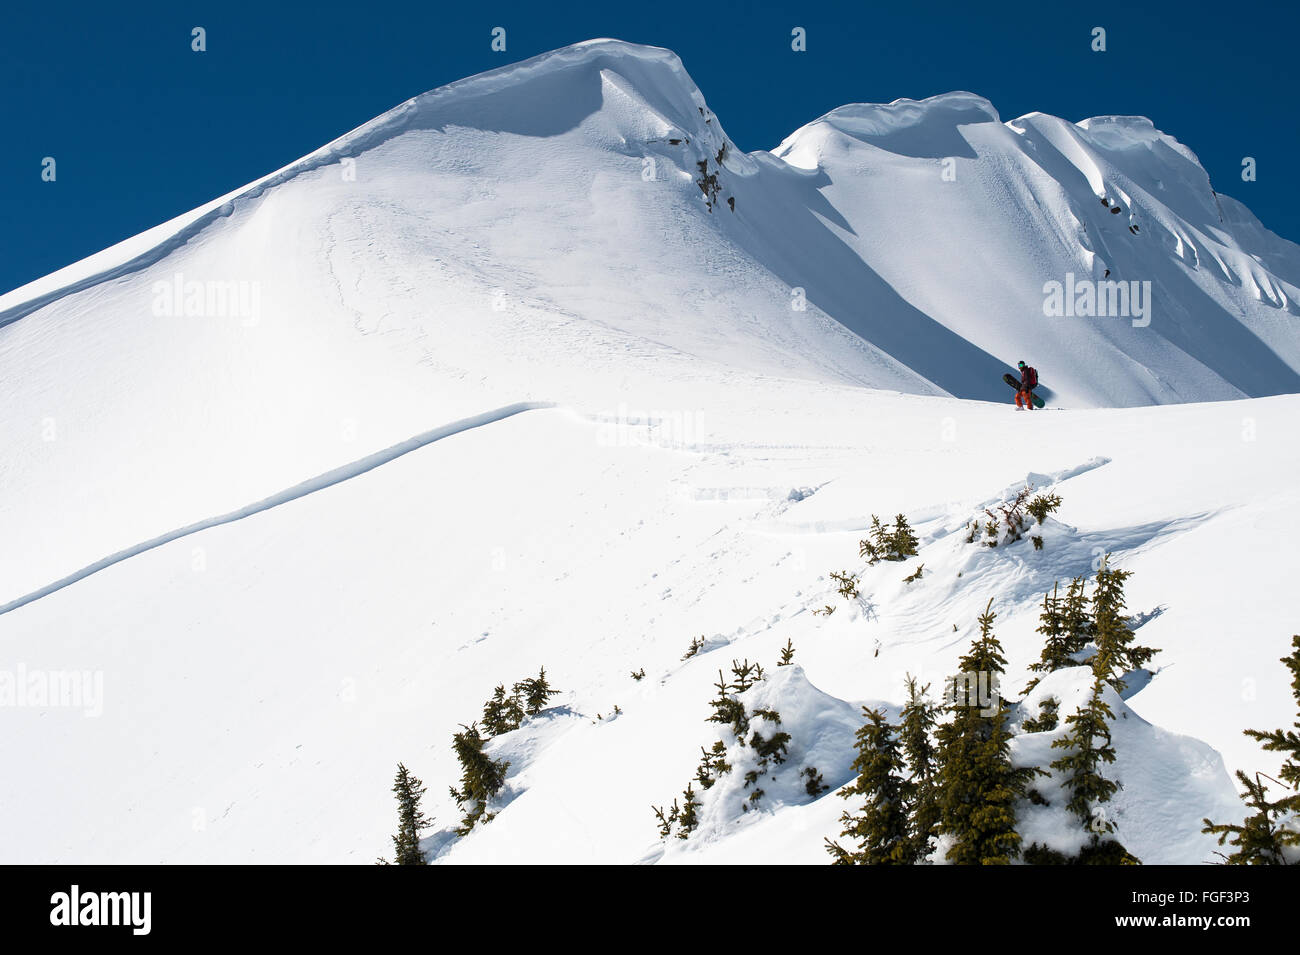 Jay Hergert blickt auf eine Lawine, die während der Hikg auf einem Grat le er brach hinunter das Backcountry British Columbia Snowboarden. Stockfoto